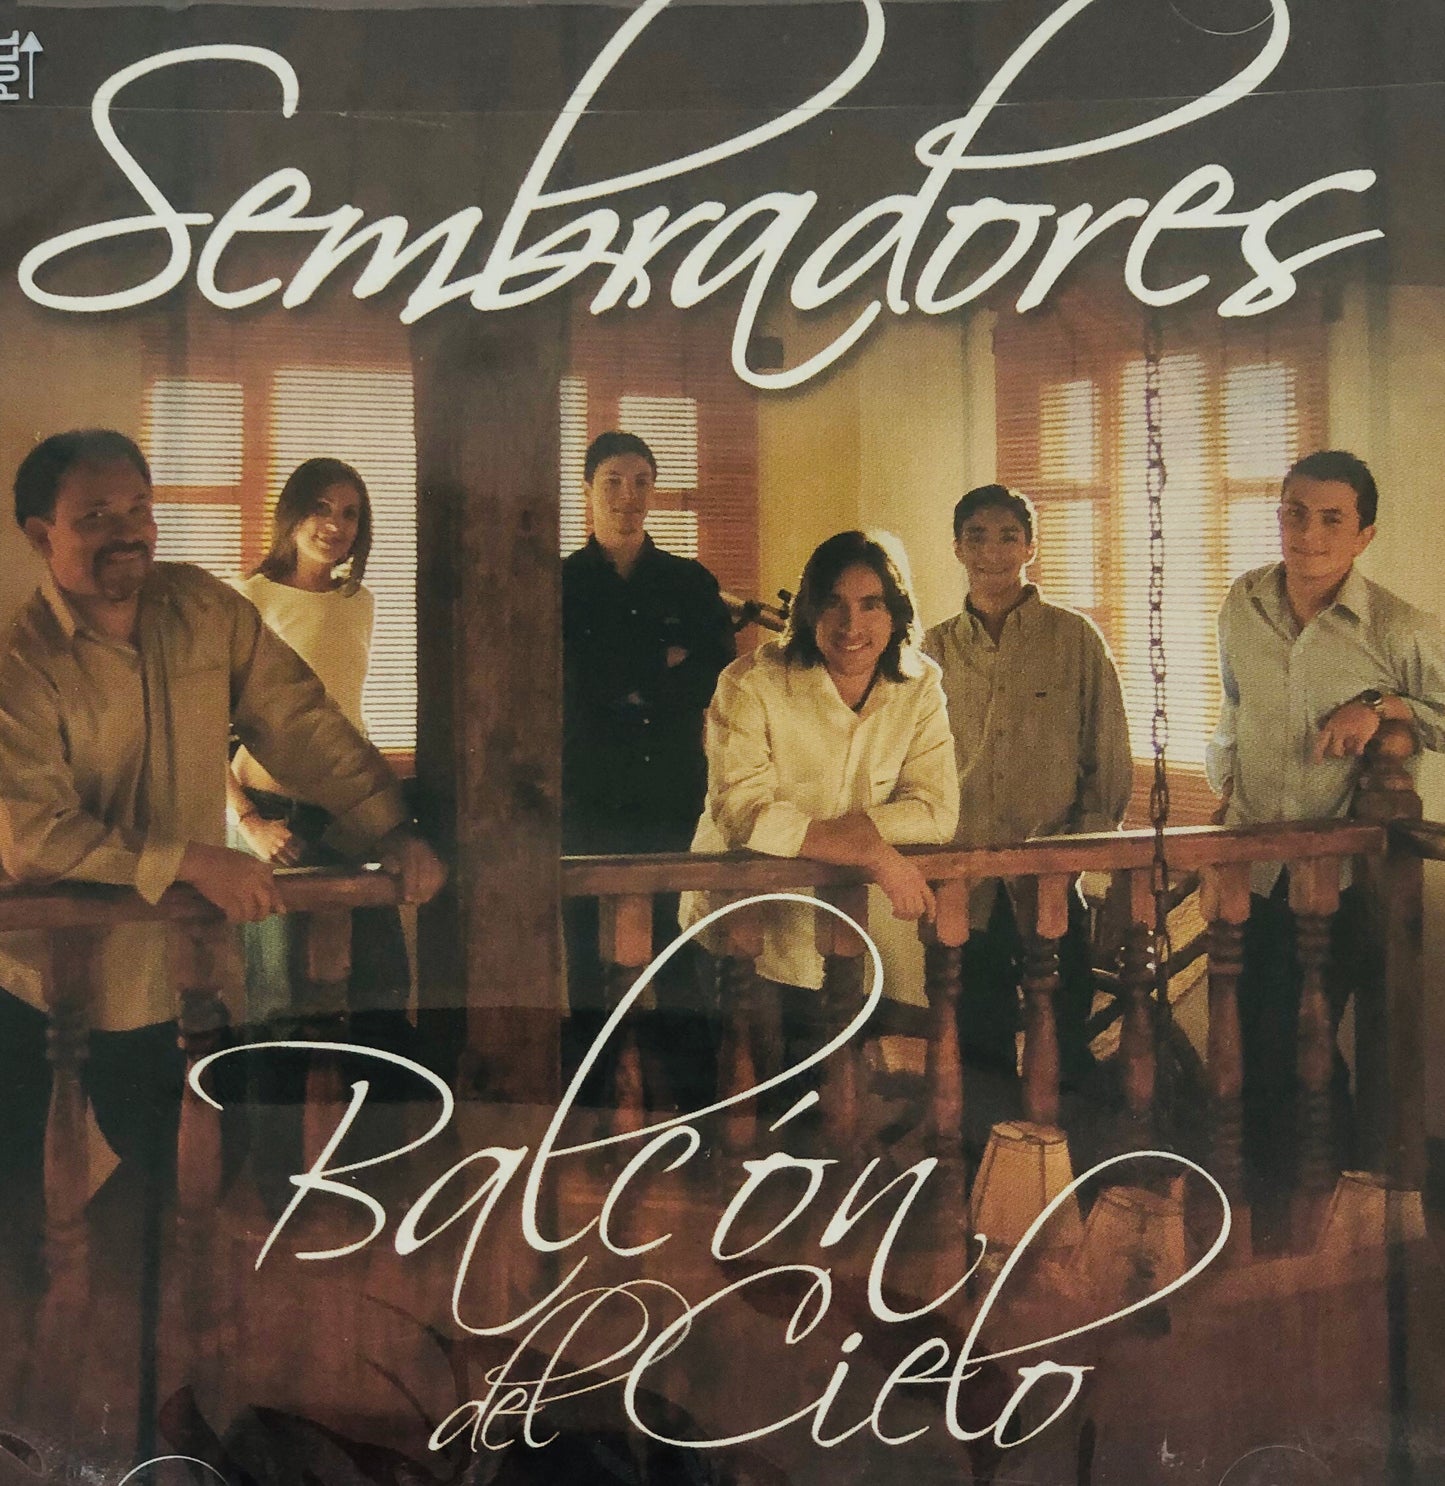 CD - Balcon del Cielo - Sembradores